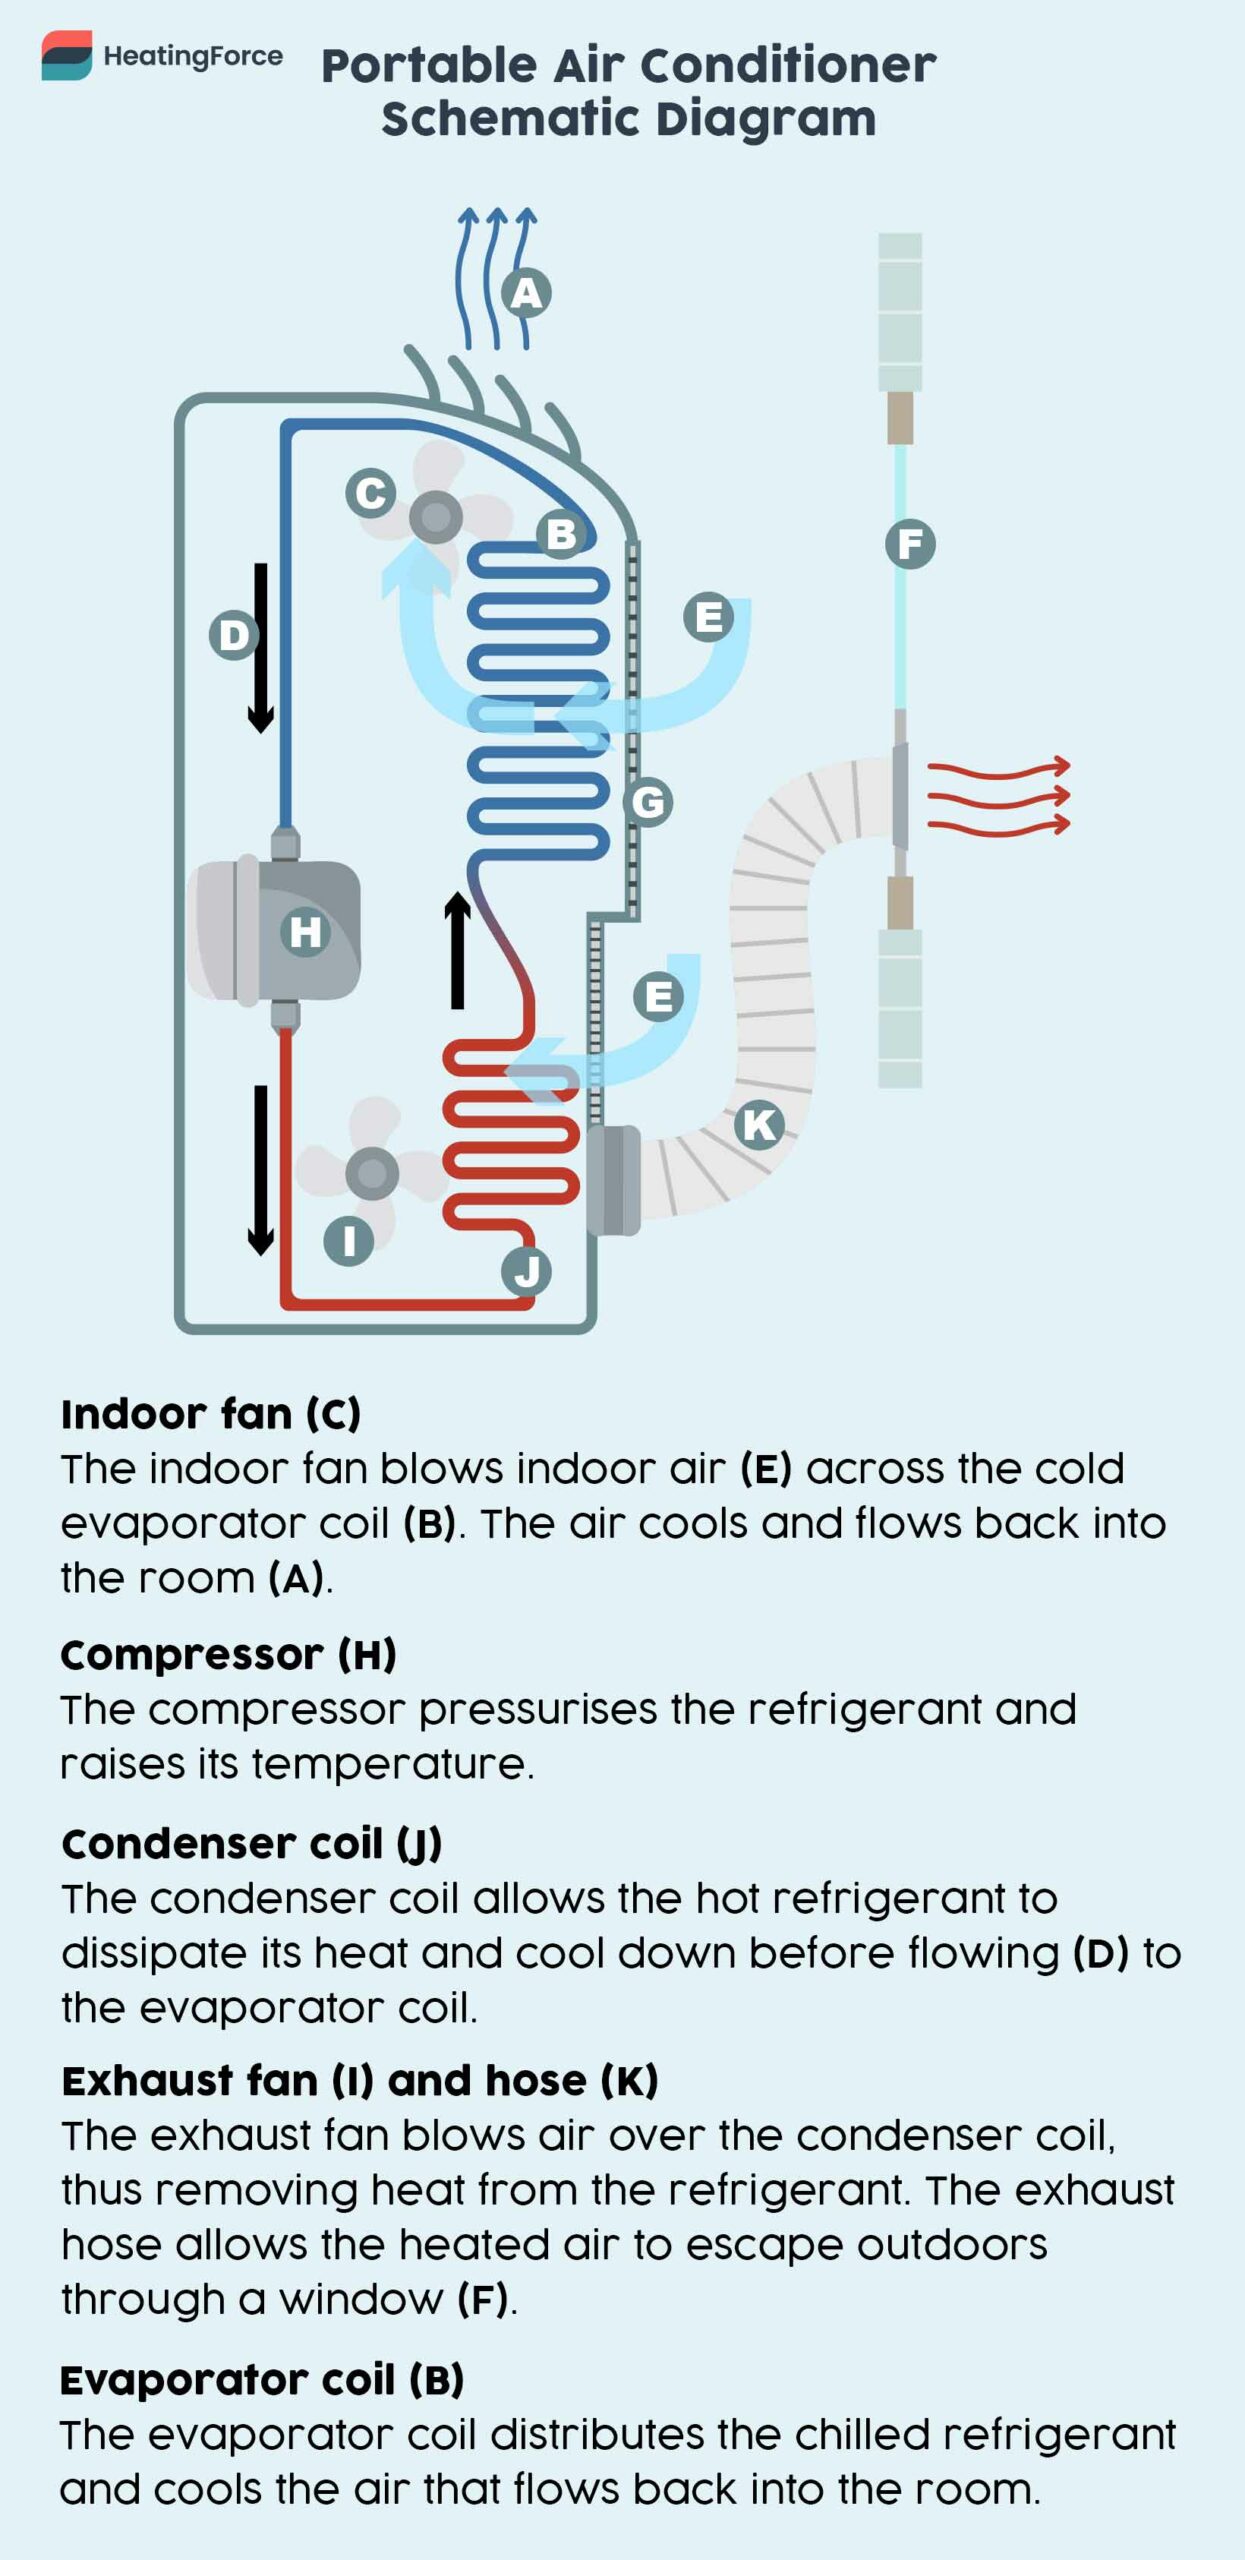 Portable air conditioner diagram